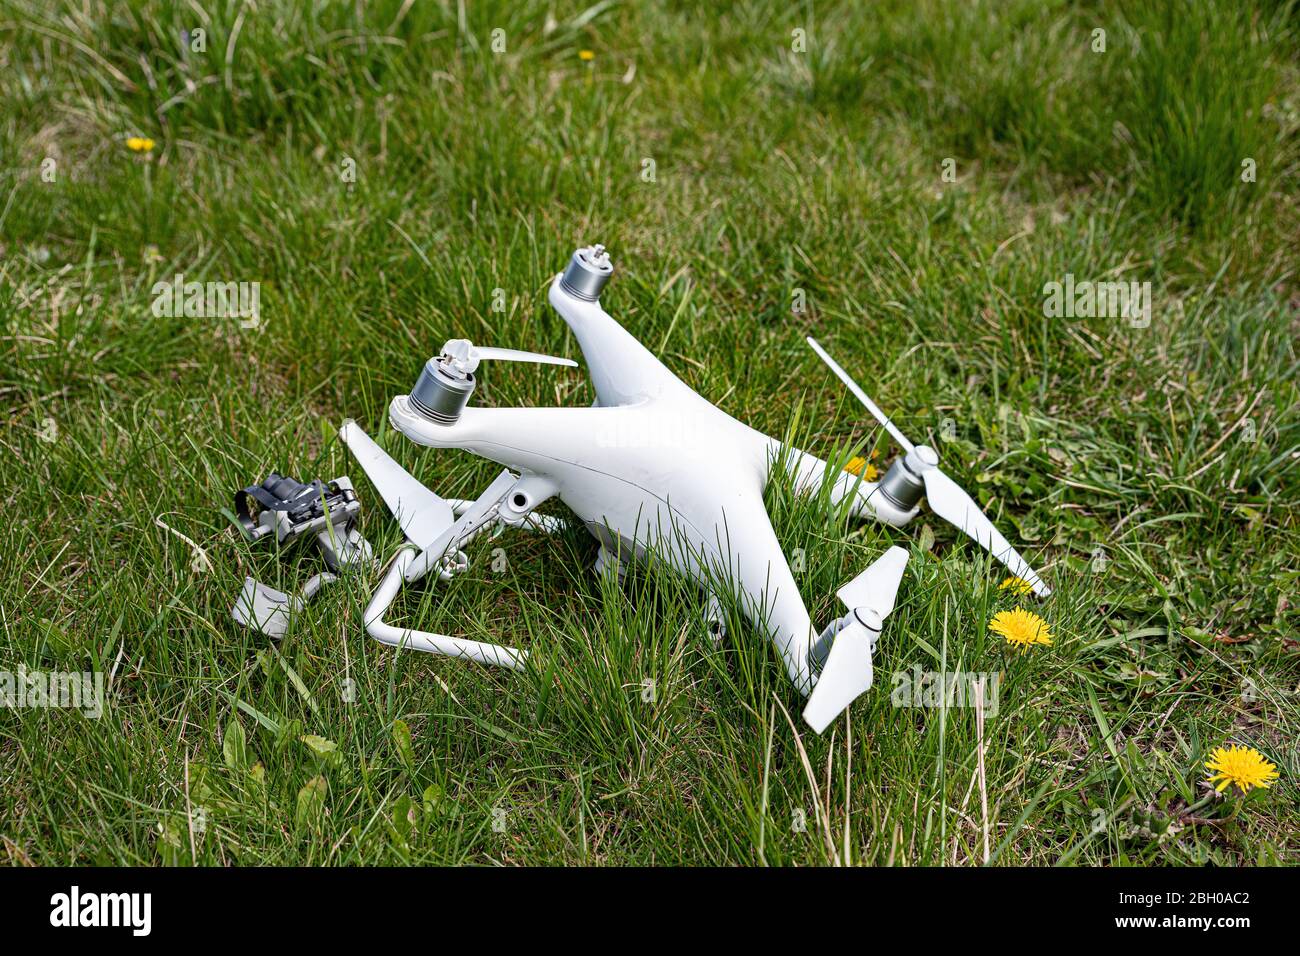 Vehículo aéreo no tripulado roto, drone roto después del accidente  Fotografía de stock - Alamy